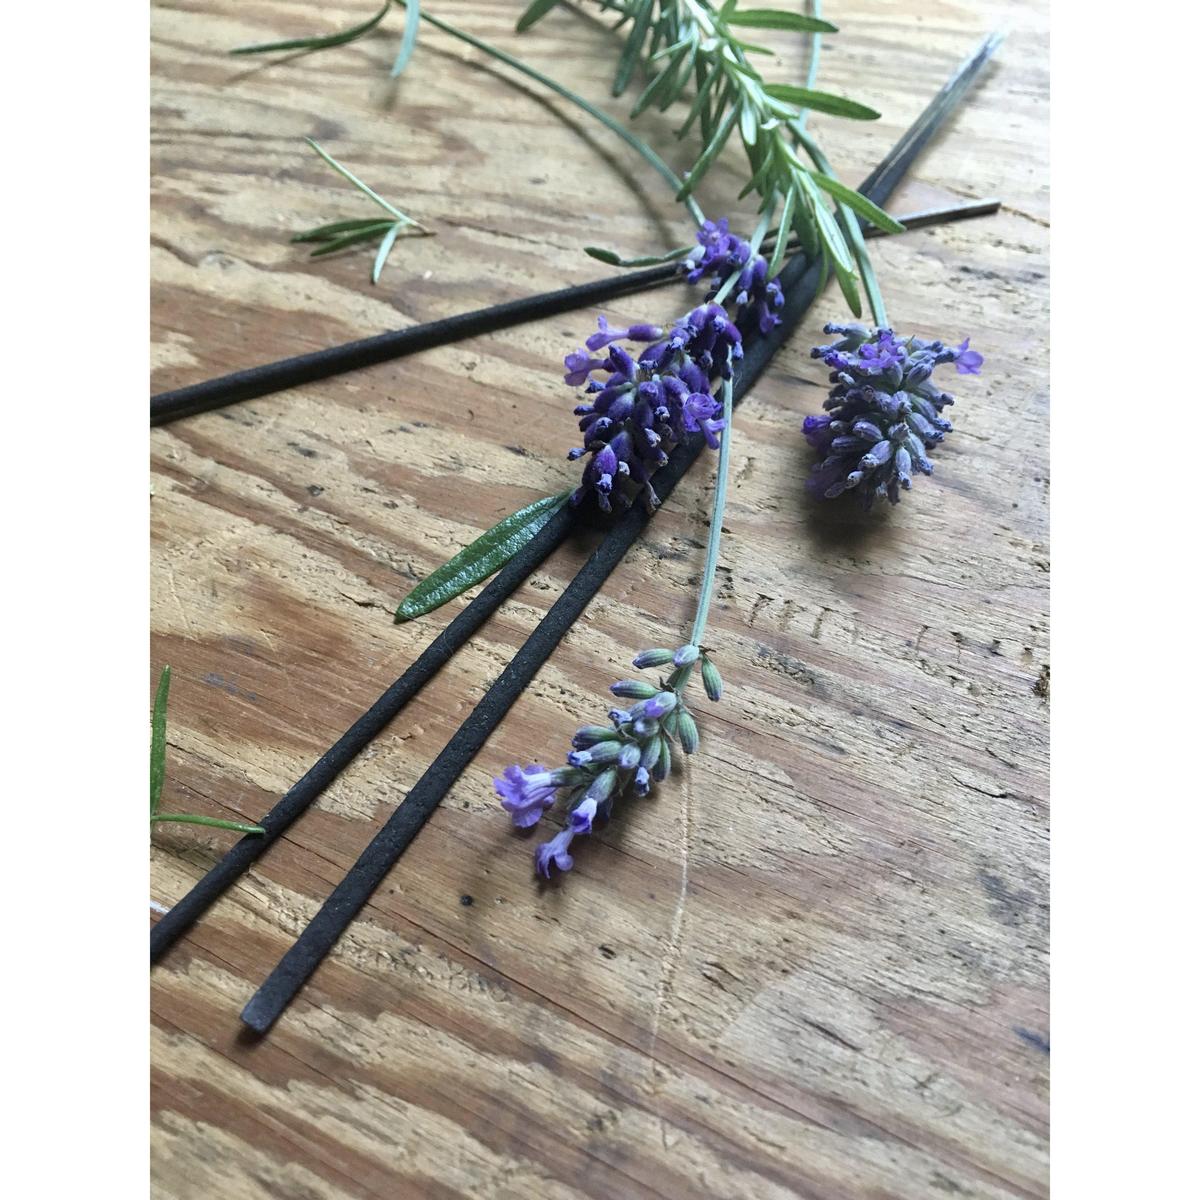 Herbal Renewal All-Natural Incense (Lavender & Rosemary)